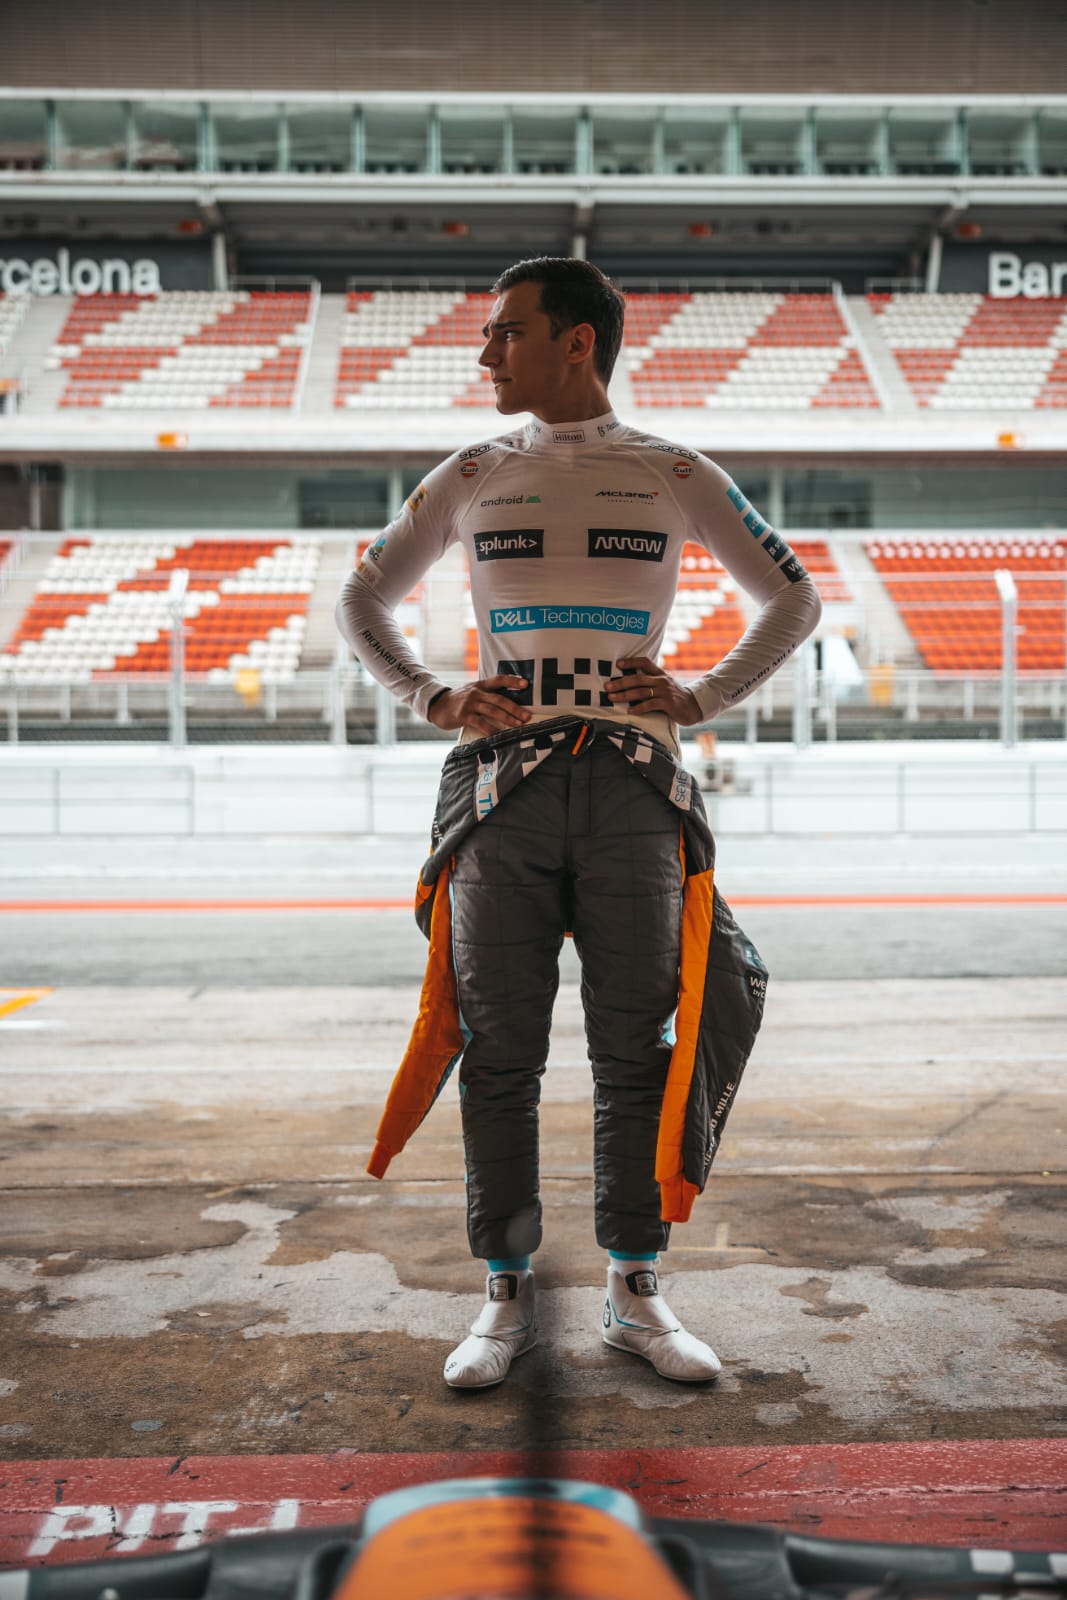 A dream comes true: Palou drives Formula One!